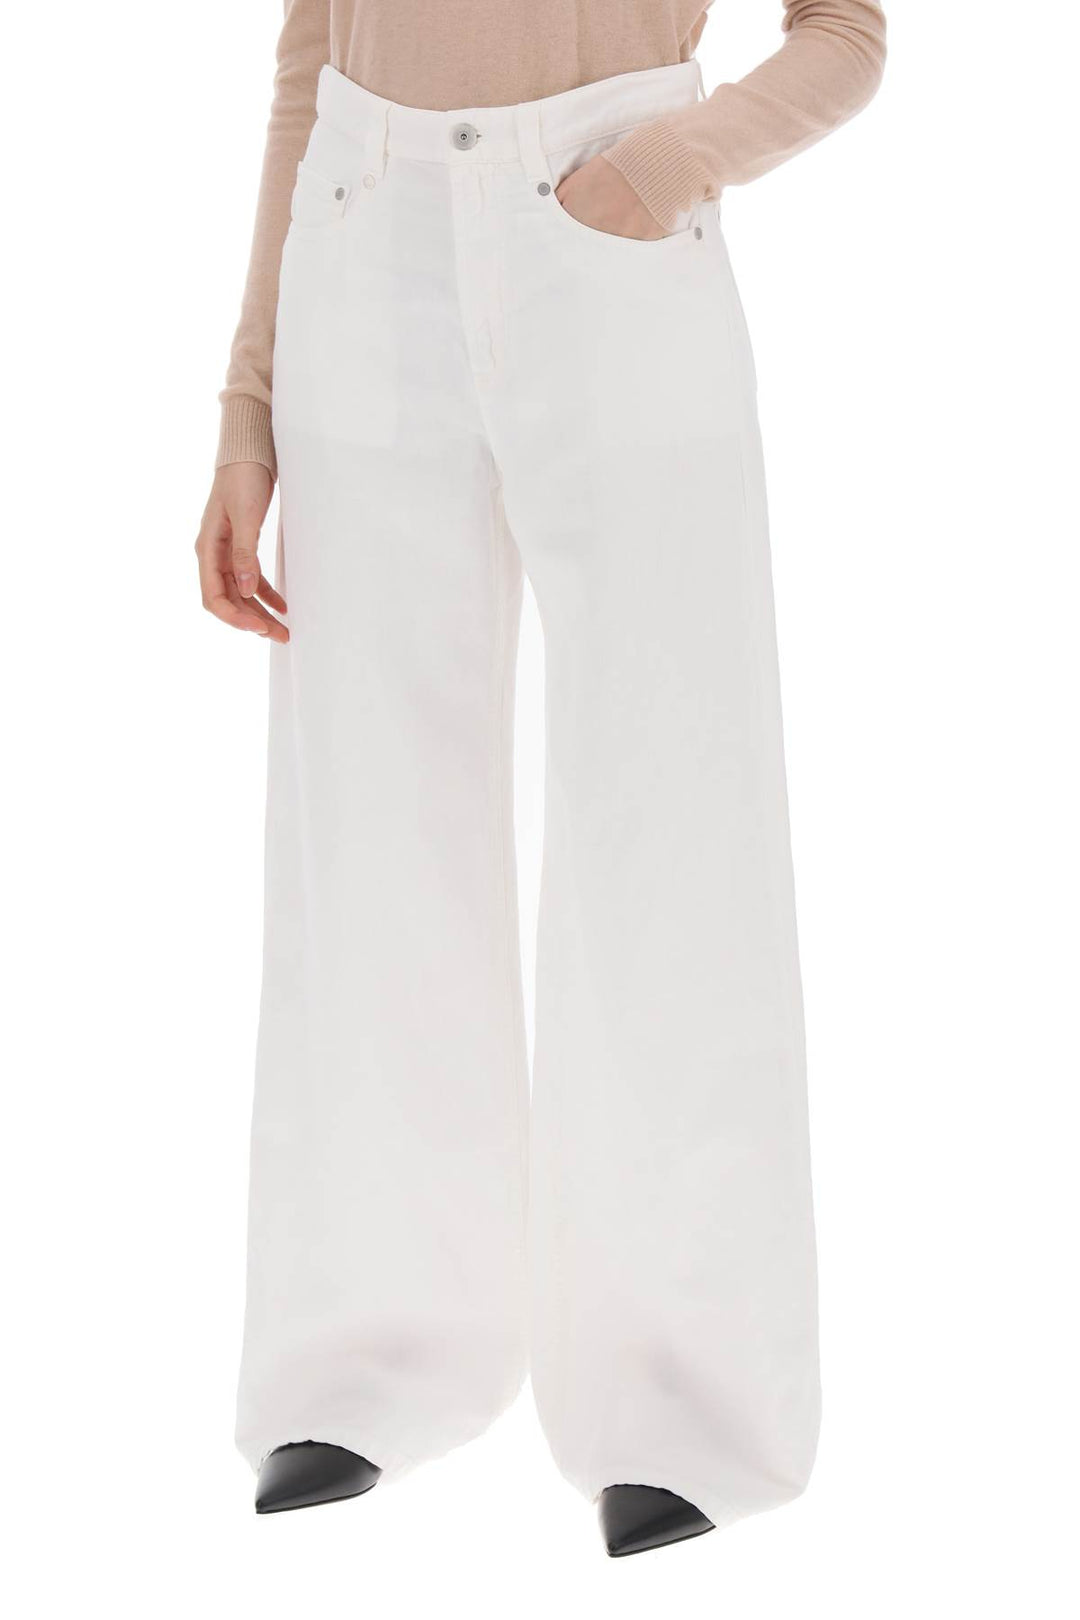 Brunello Cucinelli Cotton And Linen Trousers   White